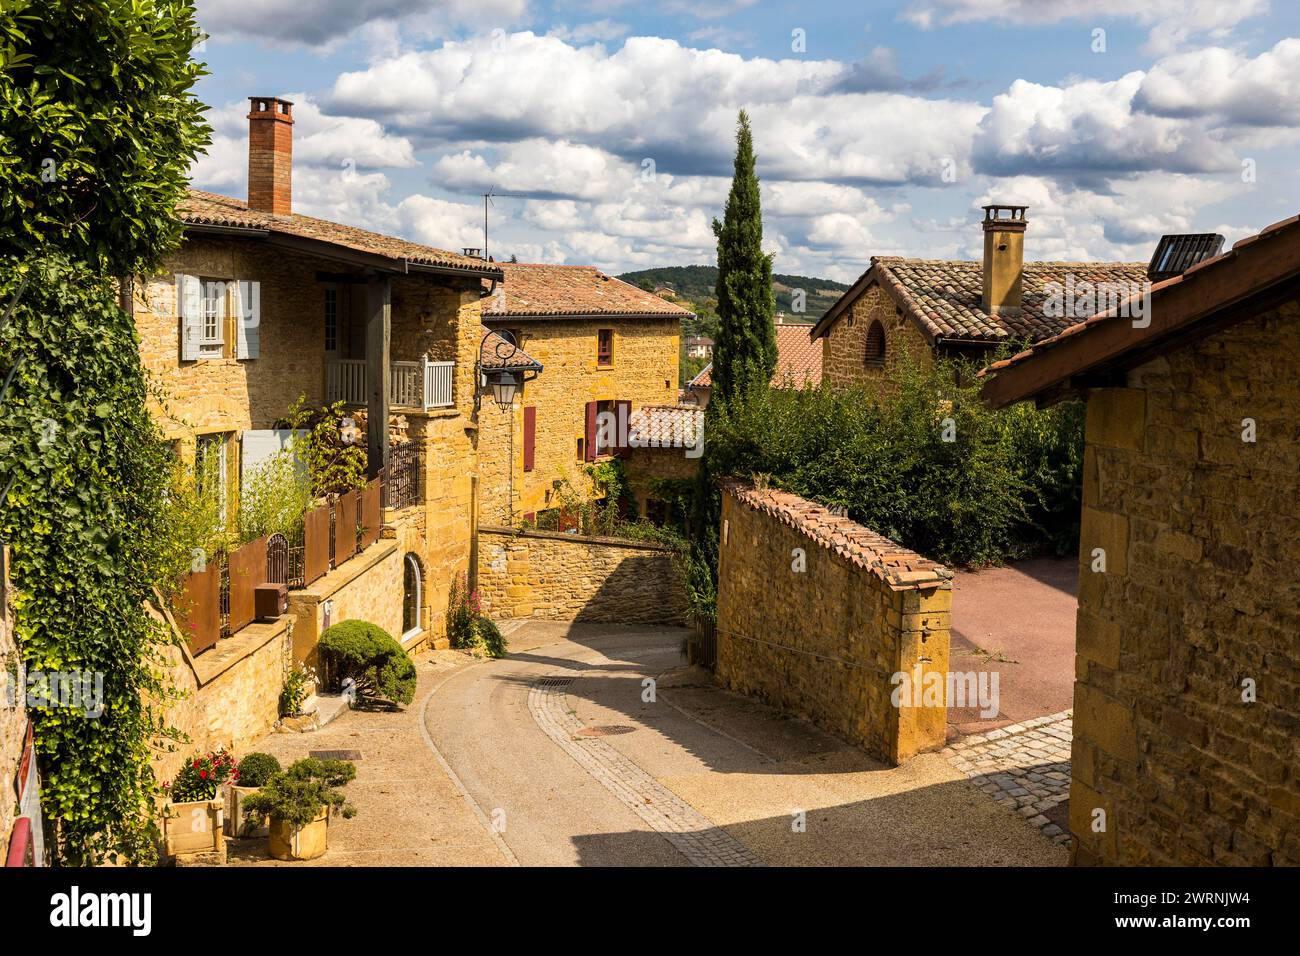 Rue et maisons en pierres dorées typique de cette région du Beaujolais dans le médiéval d’Oingt Foto Stock